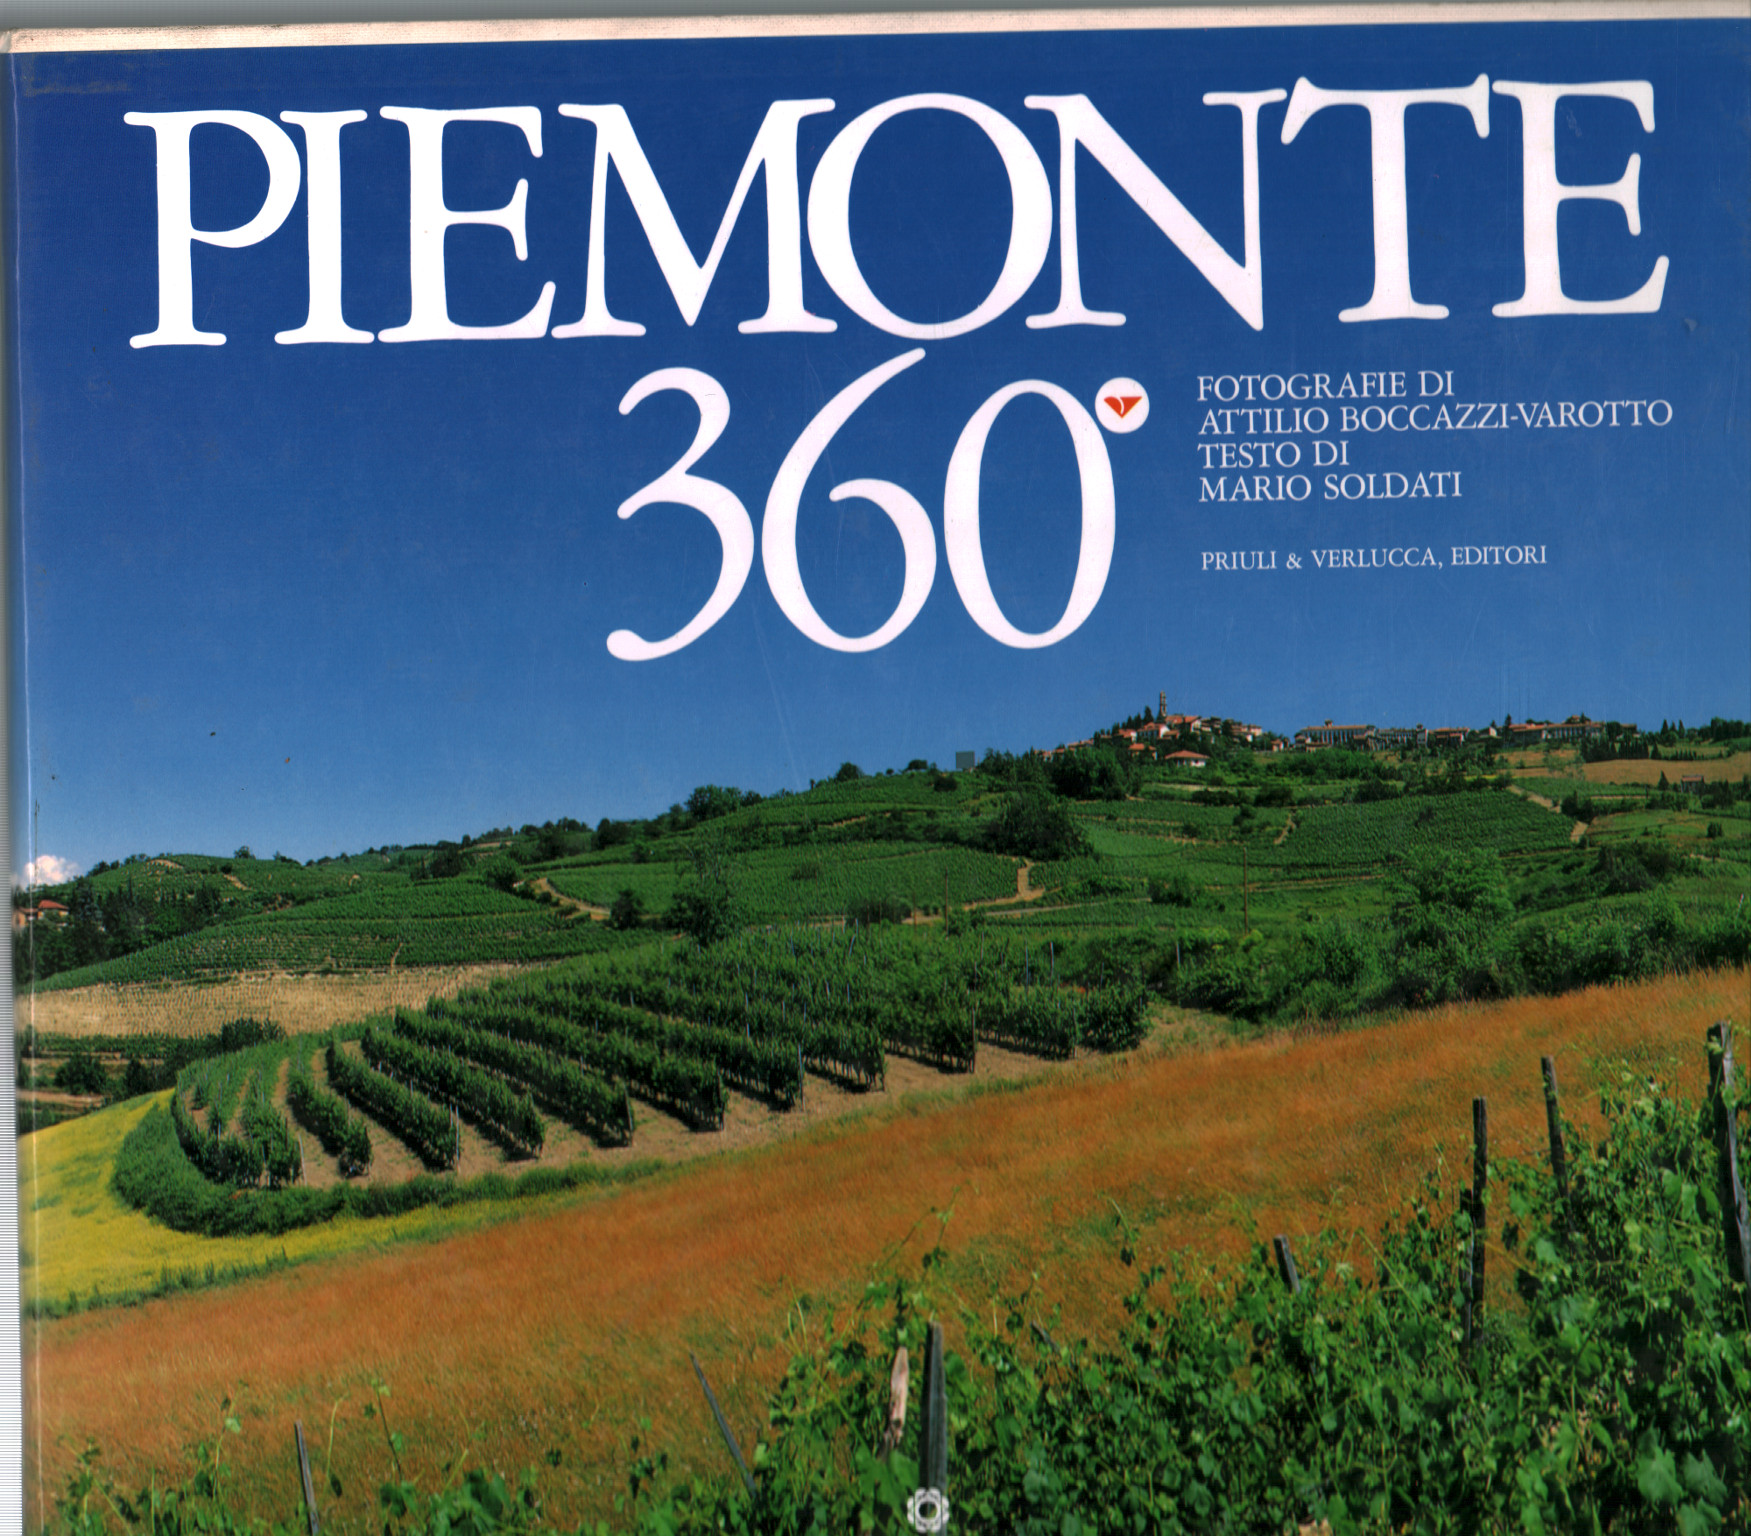 Piemonte 360º, s.una.